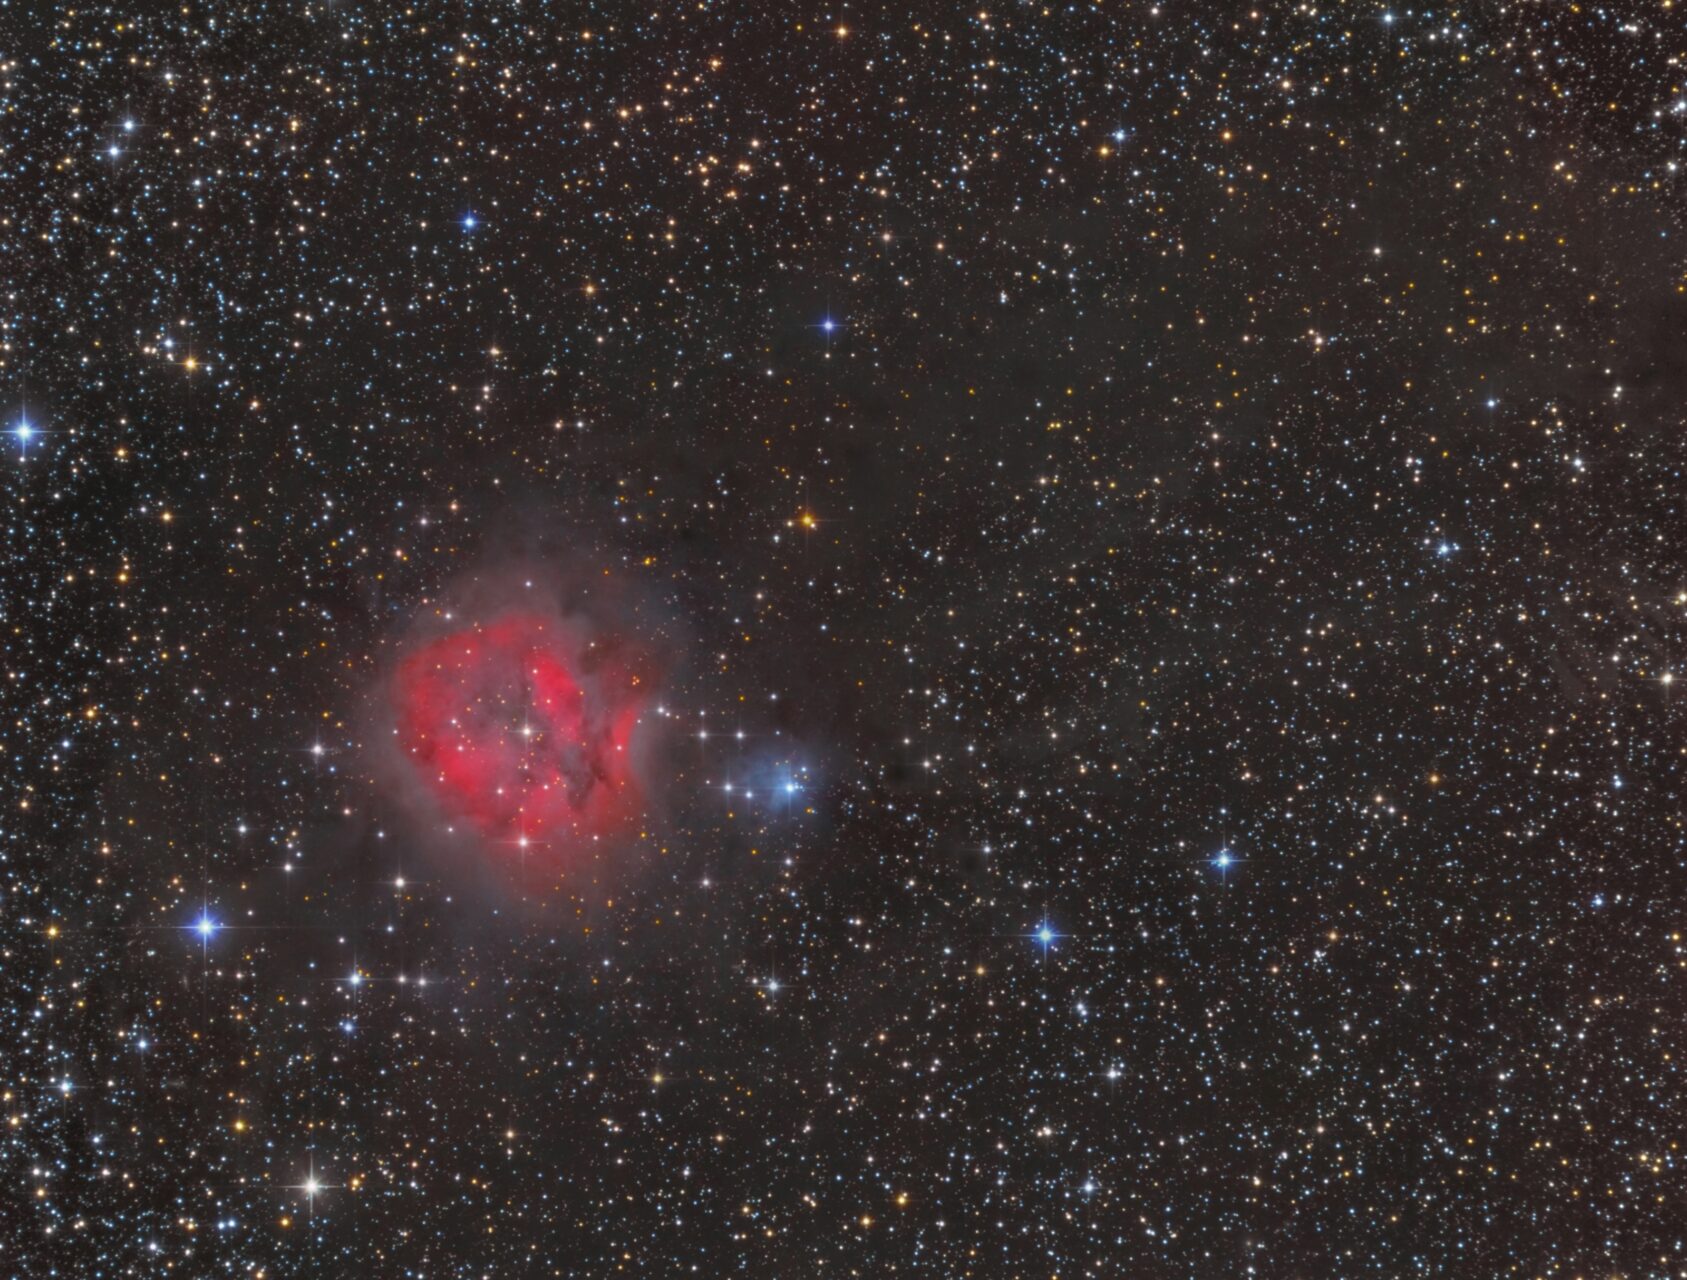 IC 5146